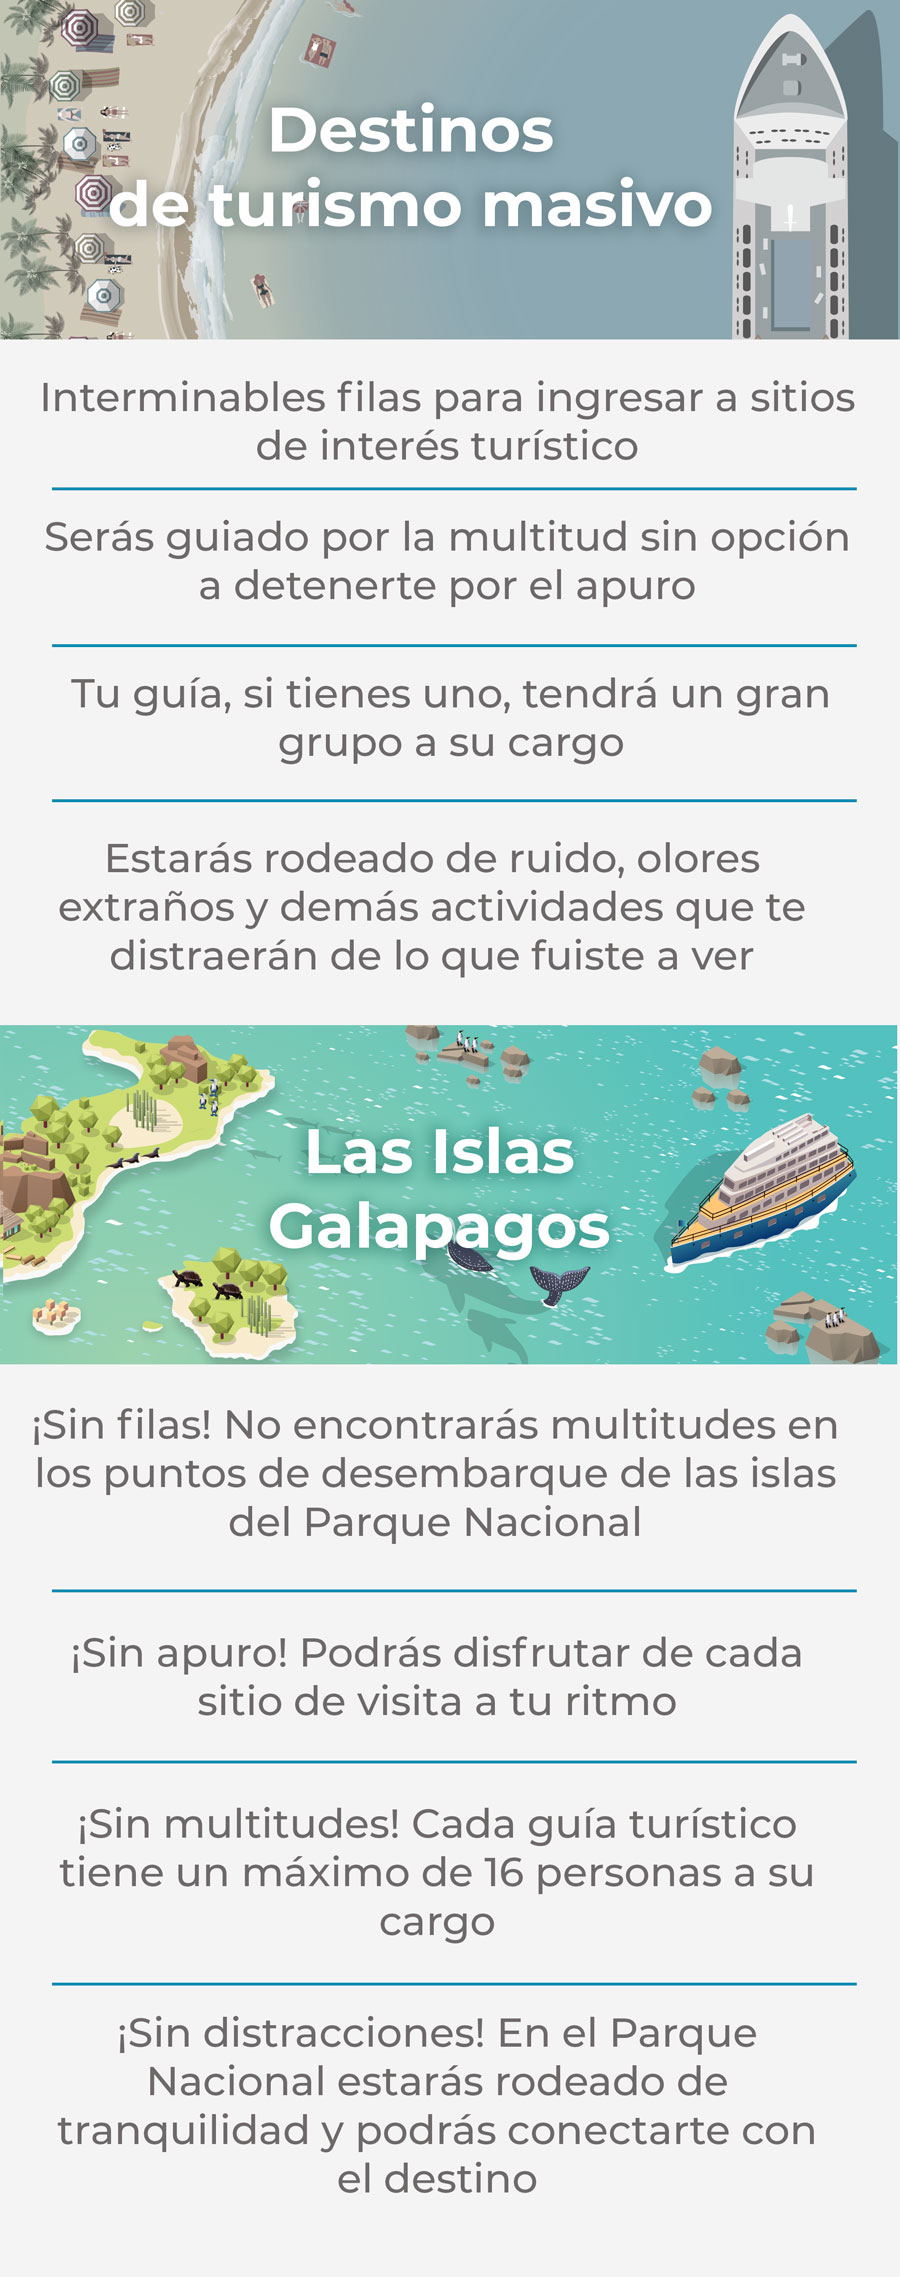 Destinos con turismo masivo vs. Las Islas Galápagos